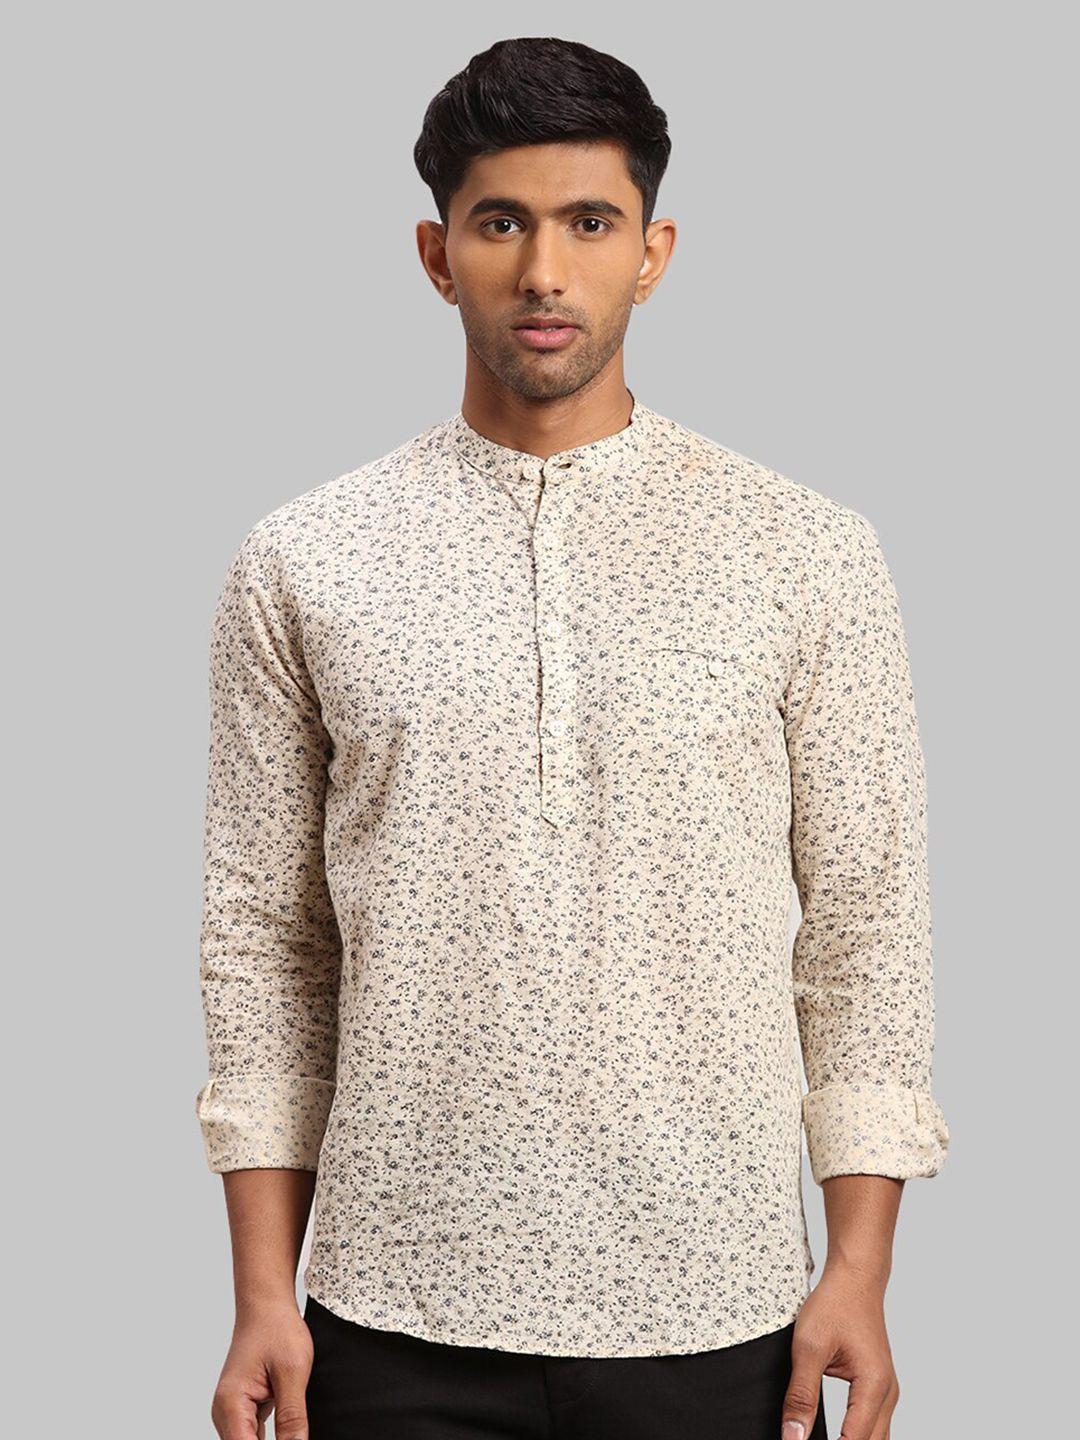 parx-men-slim-fit-floral-printed-casual-shirt